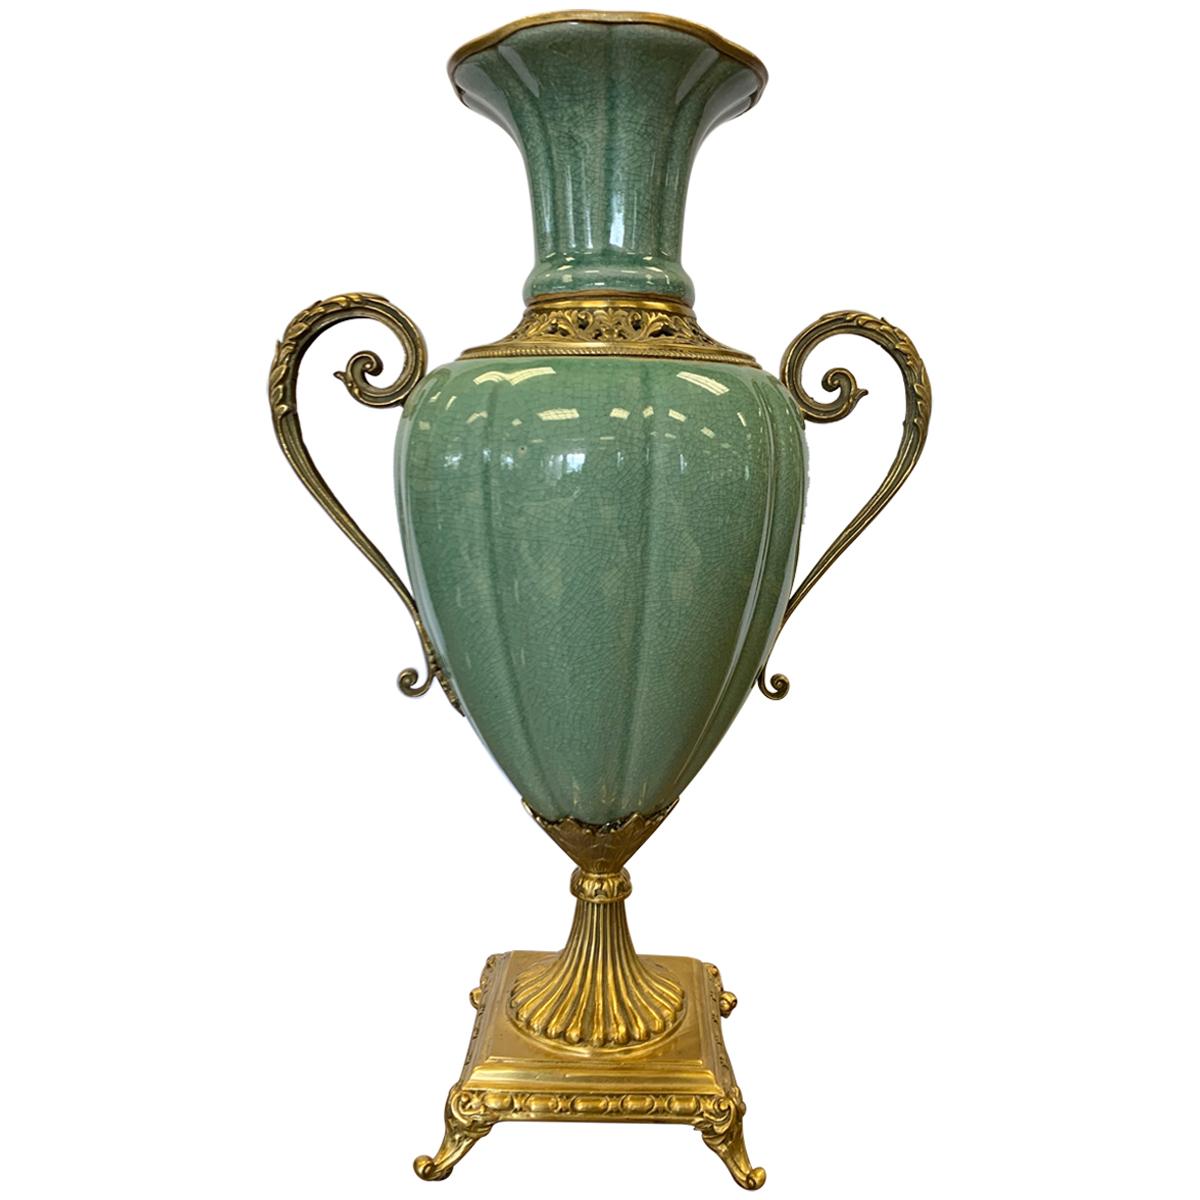 Large Celadon Porcelain Vase Urn Vessel with Brass Handles and Mounts